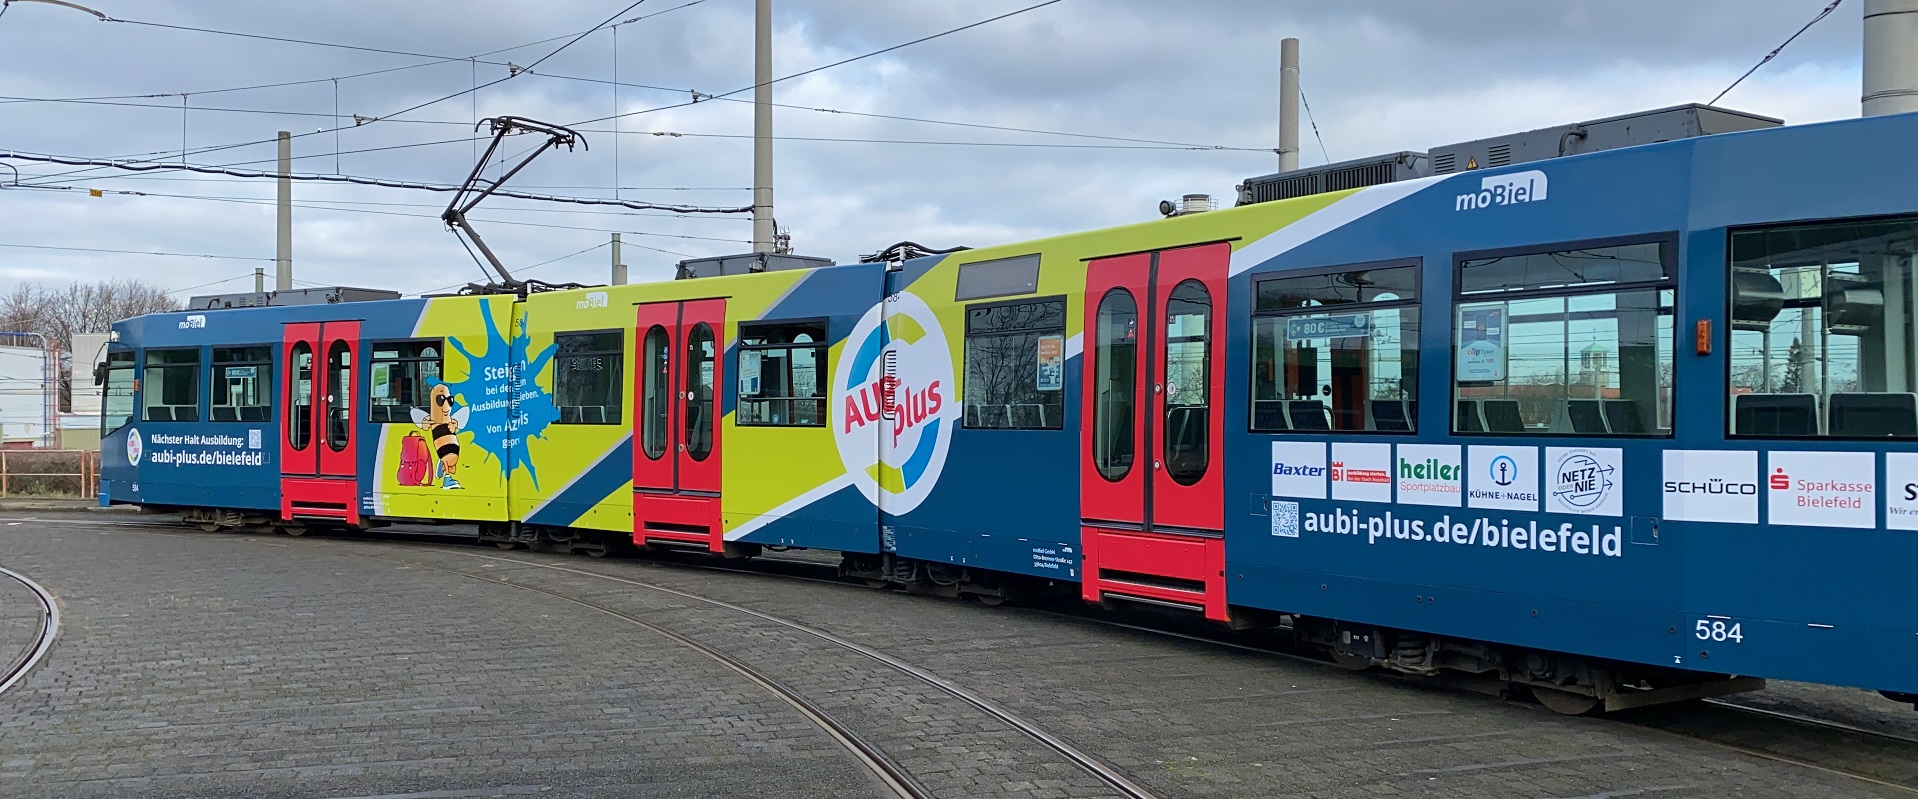 Zum Start der Initiative wurde eine Straßenbahn in Bielefeld gestaltet